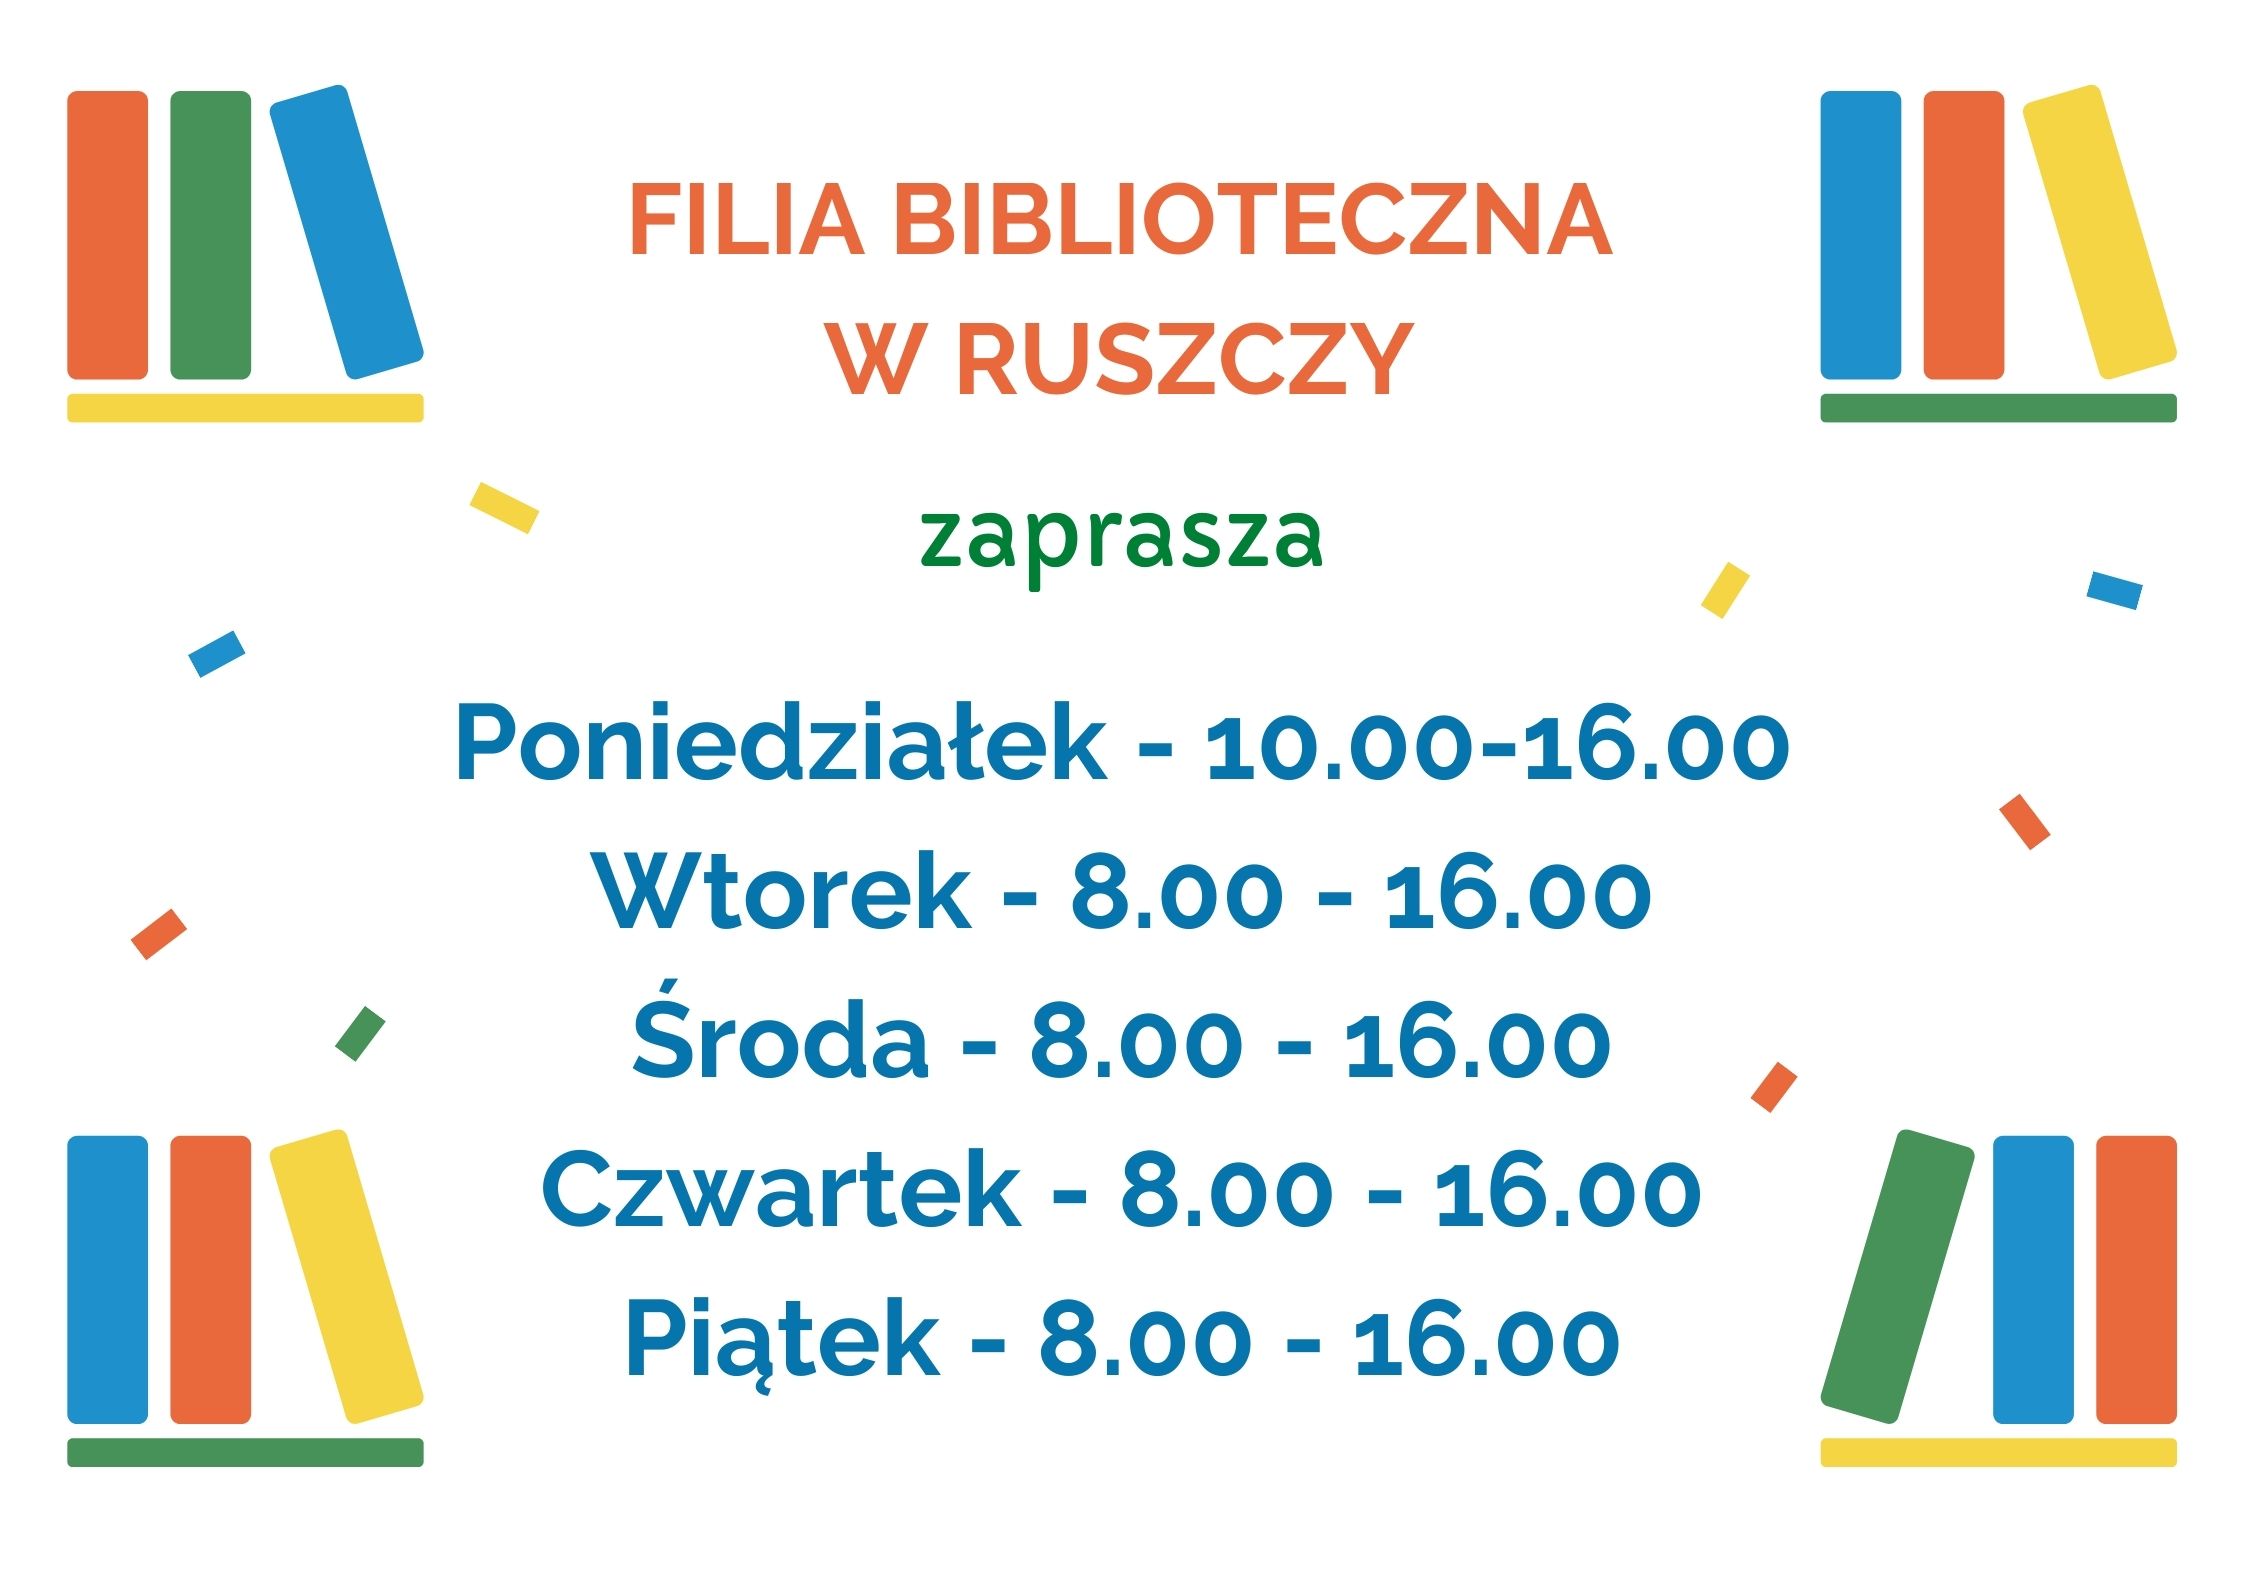 Plakat informujący o zmianach godzin pracy Filii w Ruszczy